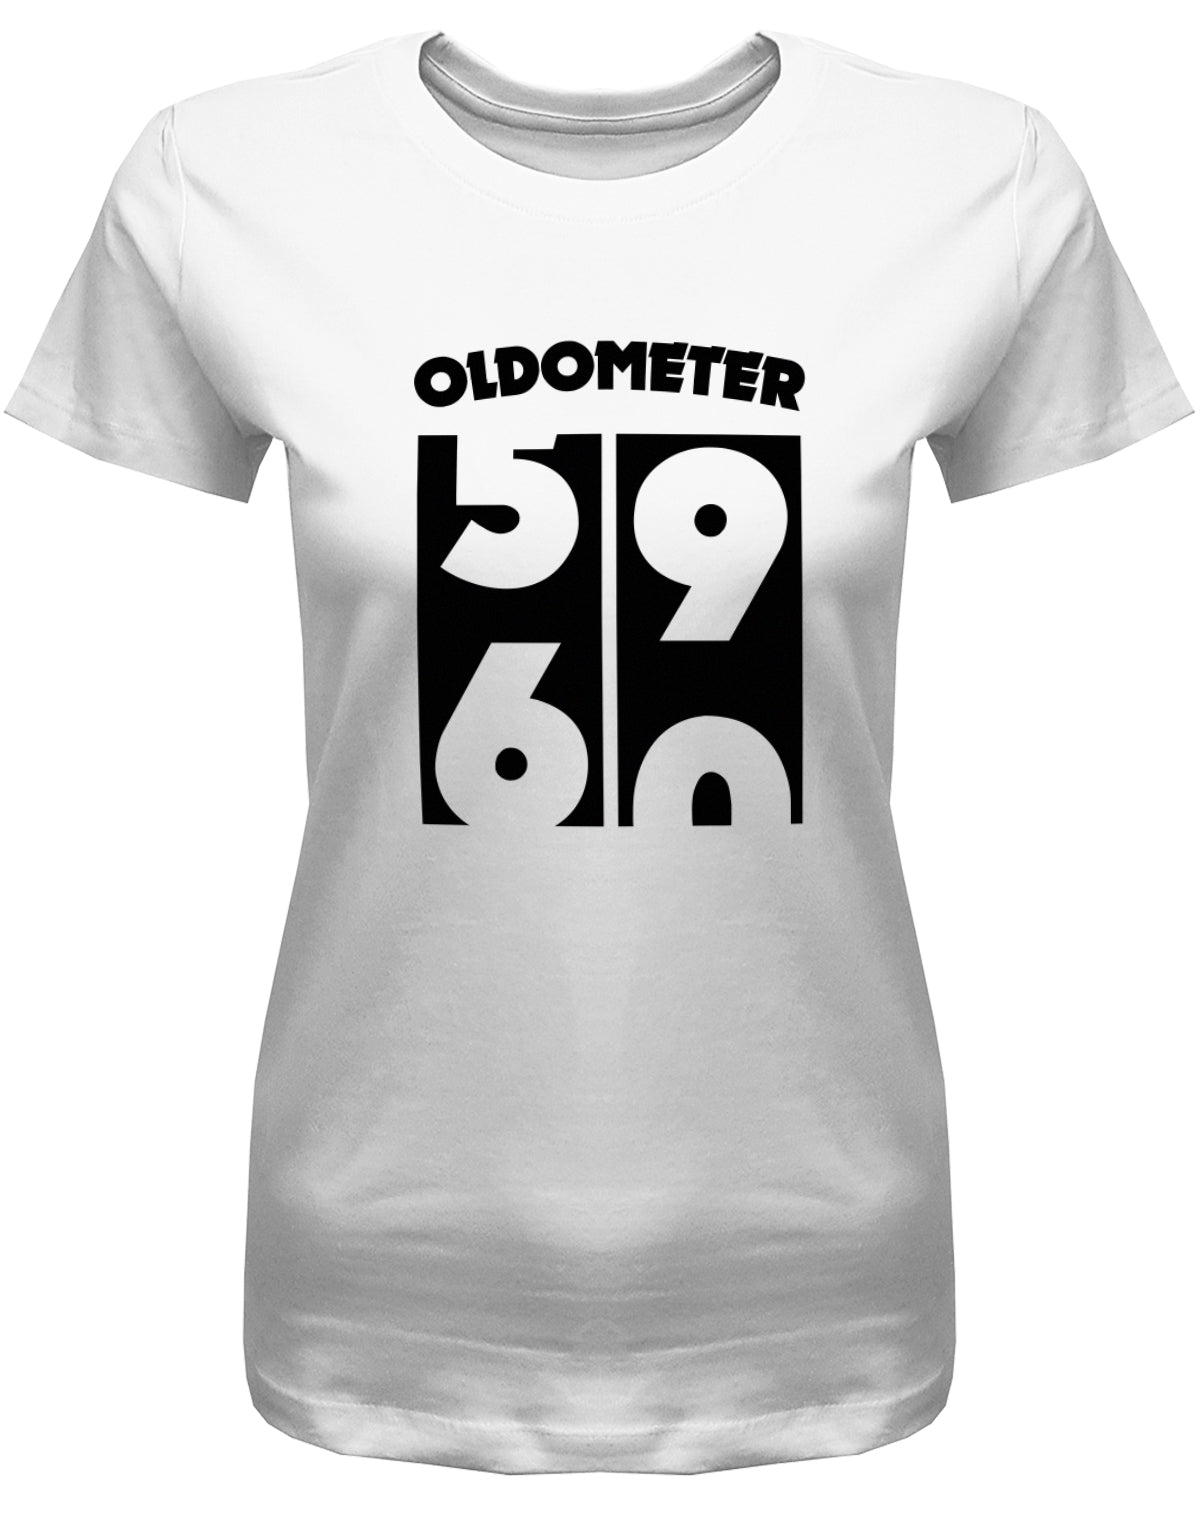 Lustiges T-Shirt zum 60 Geburtstag für die Frau Bedruckt mit Oldometer Wechsel von 59 zu 60 Jahren. Weiss